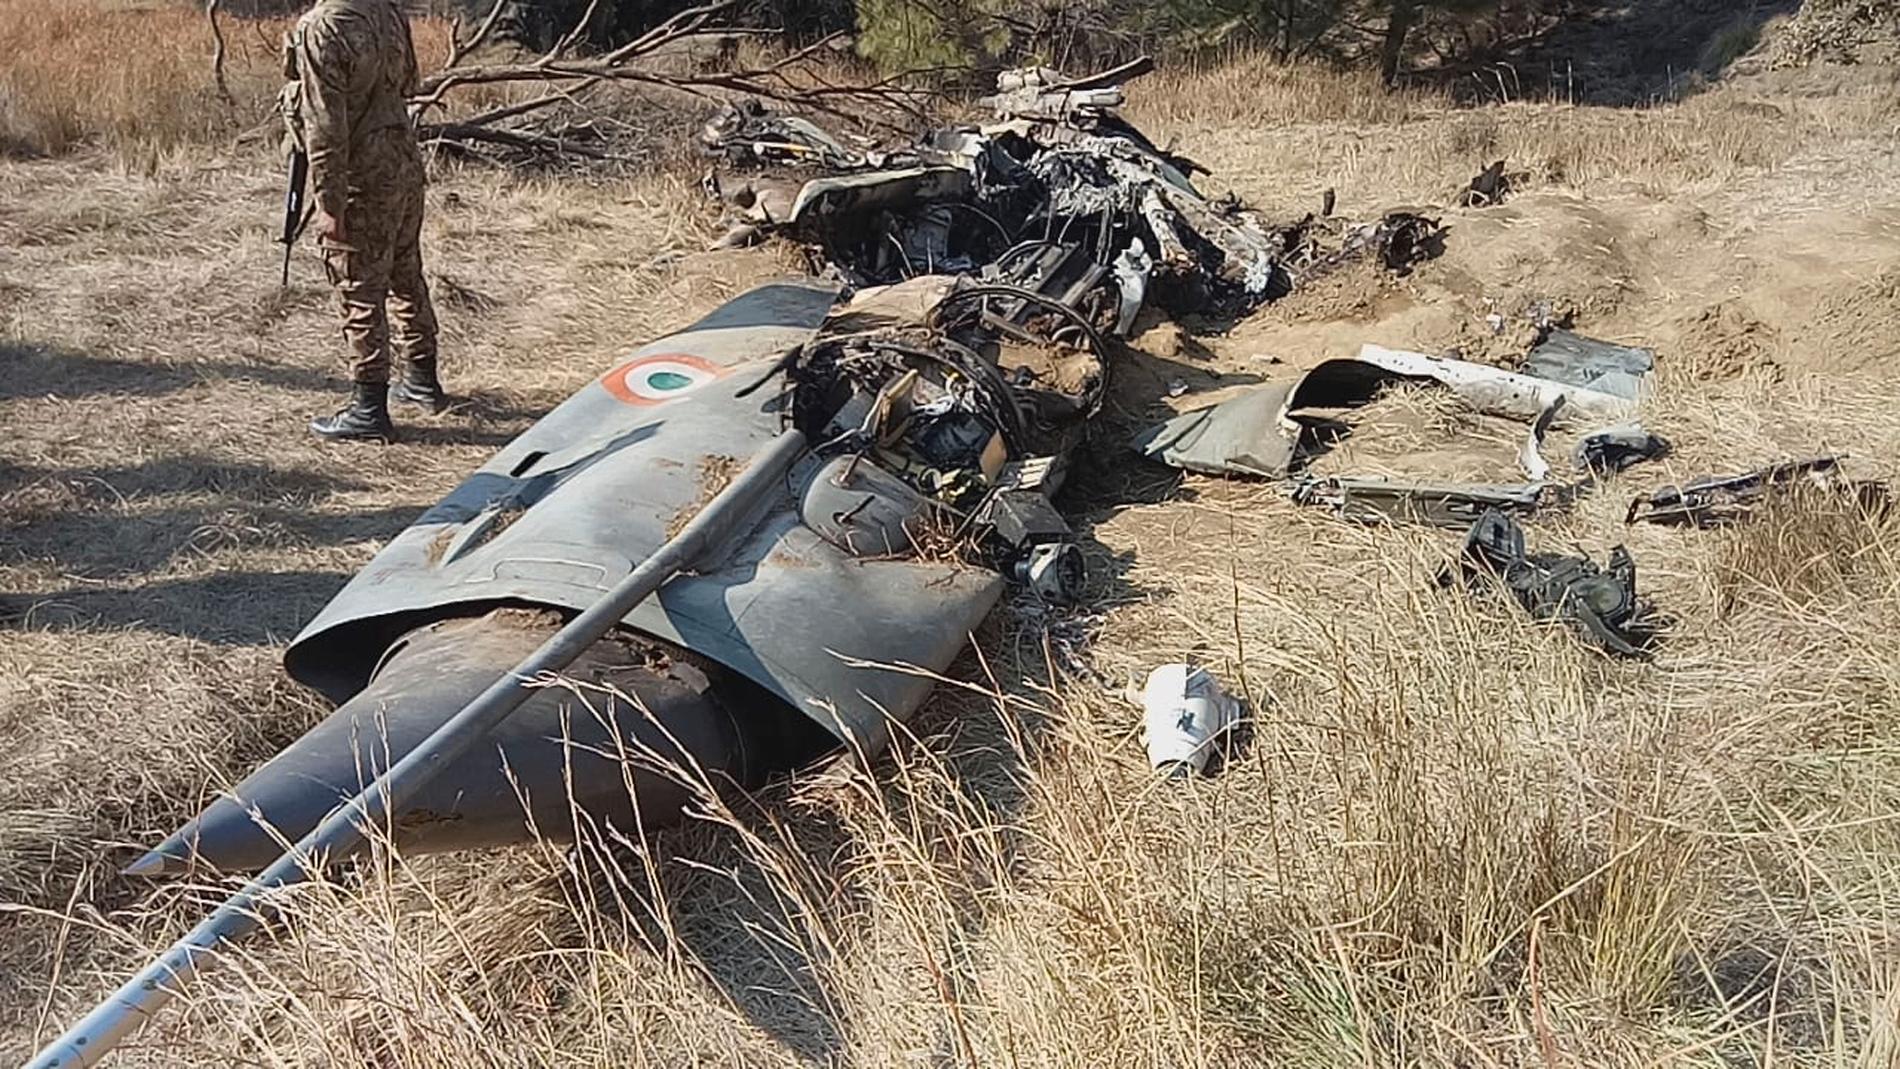 En pakistansk soldat bredvid det indiska flygplan som sköts ned av pakistansk militär. Den indiske pilot som tillfångatogs i samband med nedskjutningen har frigetts.